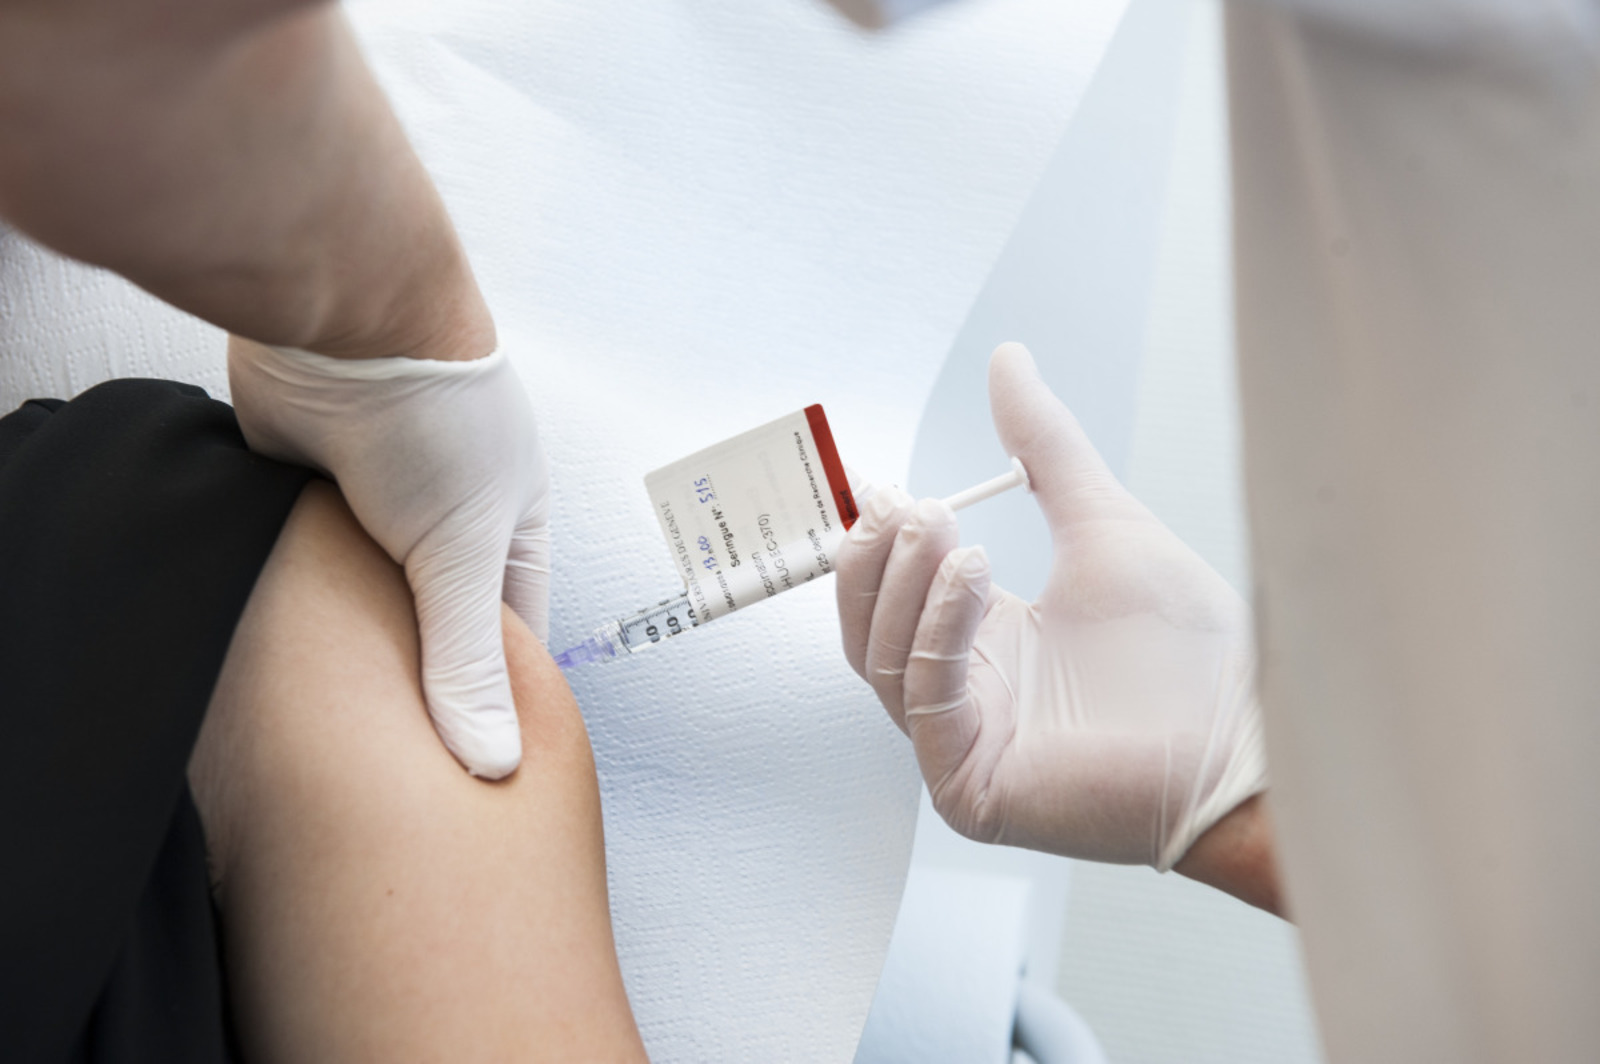 Les HUG vont tester le vaccin expérimental canadien VSV-ZEBOV contre le virus Ebola